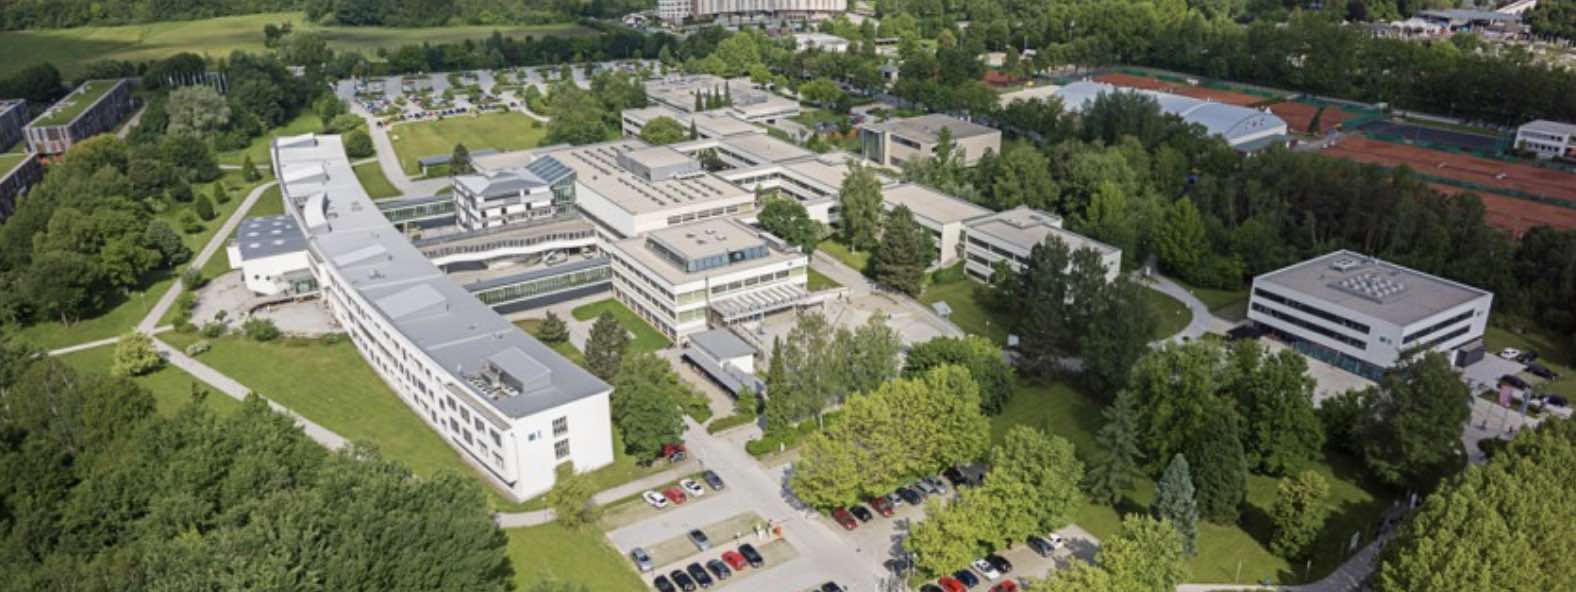 Клагенфуртський університет. Джерело фото: www.aau.at